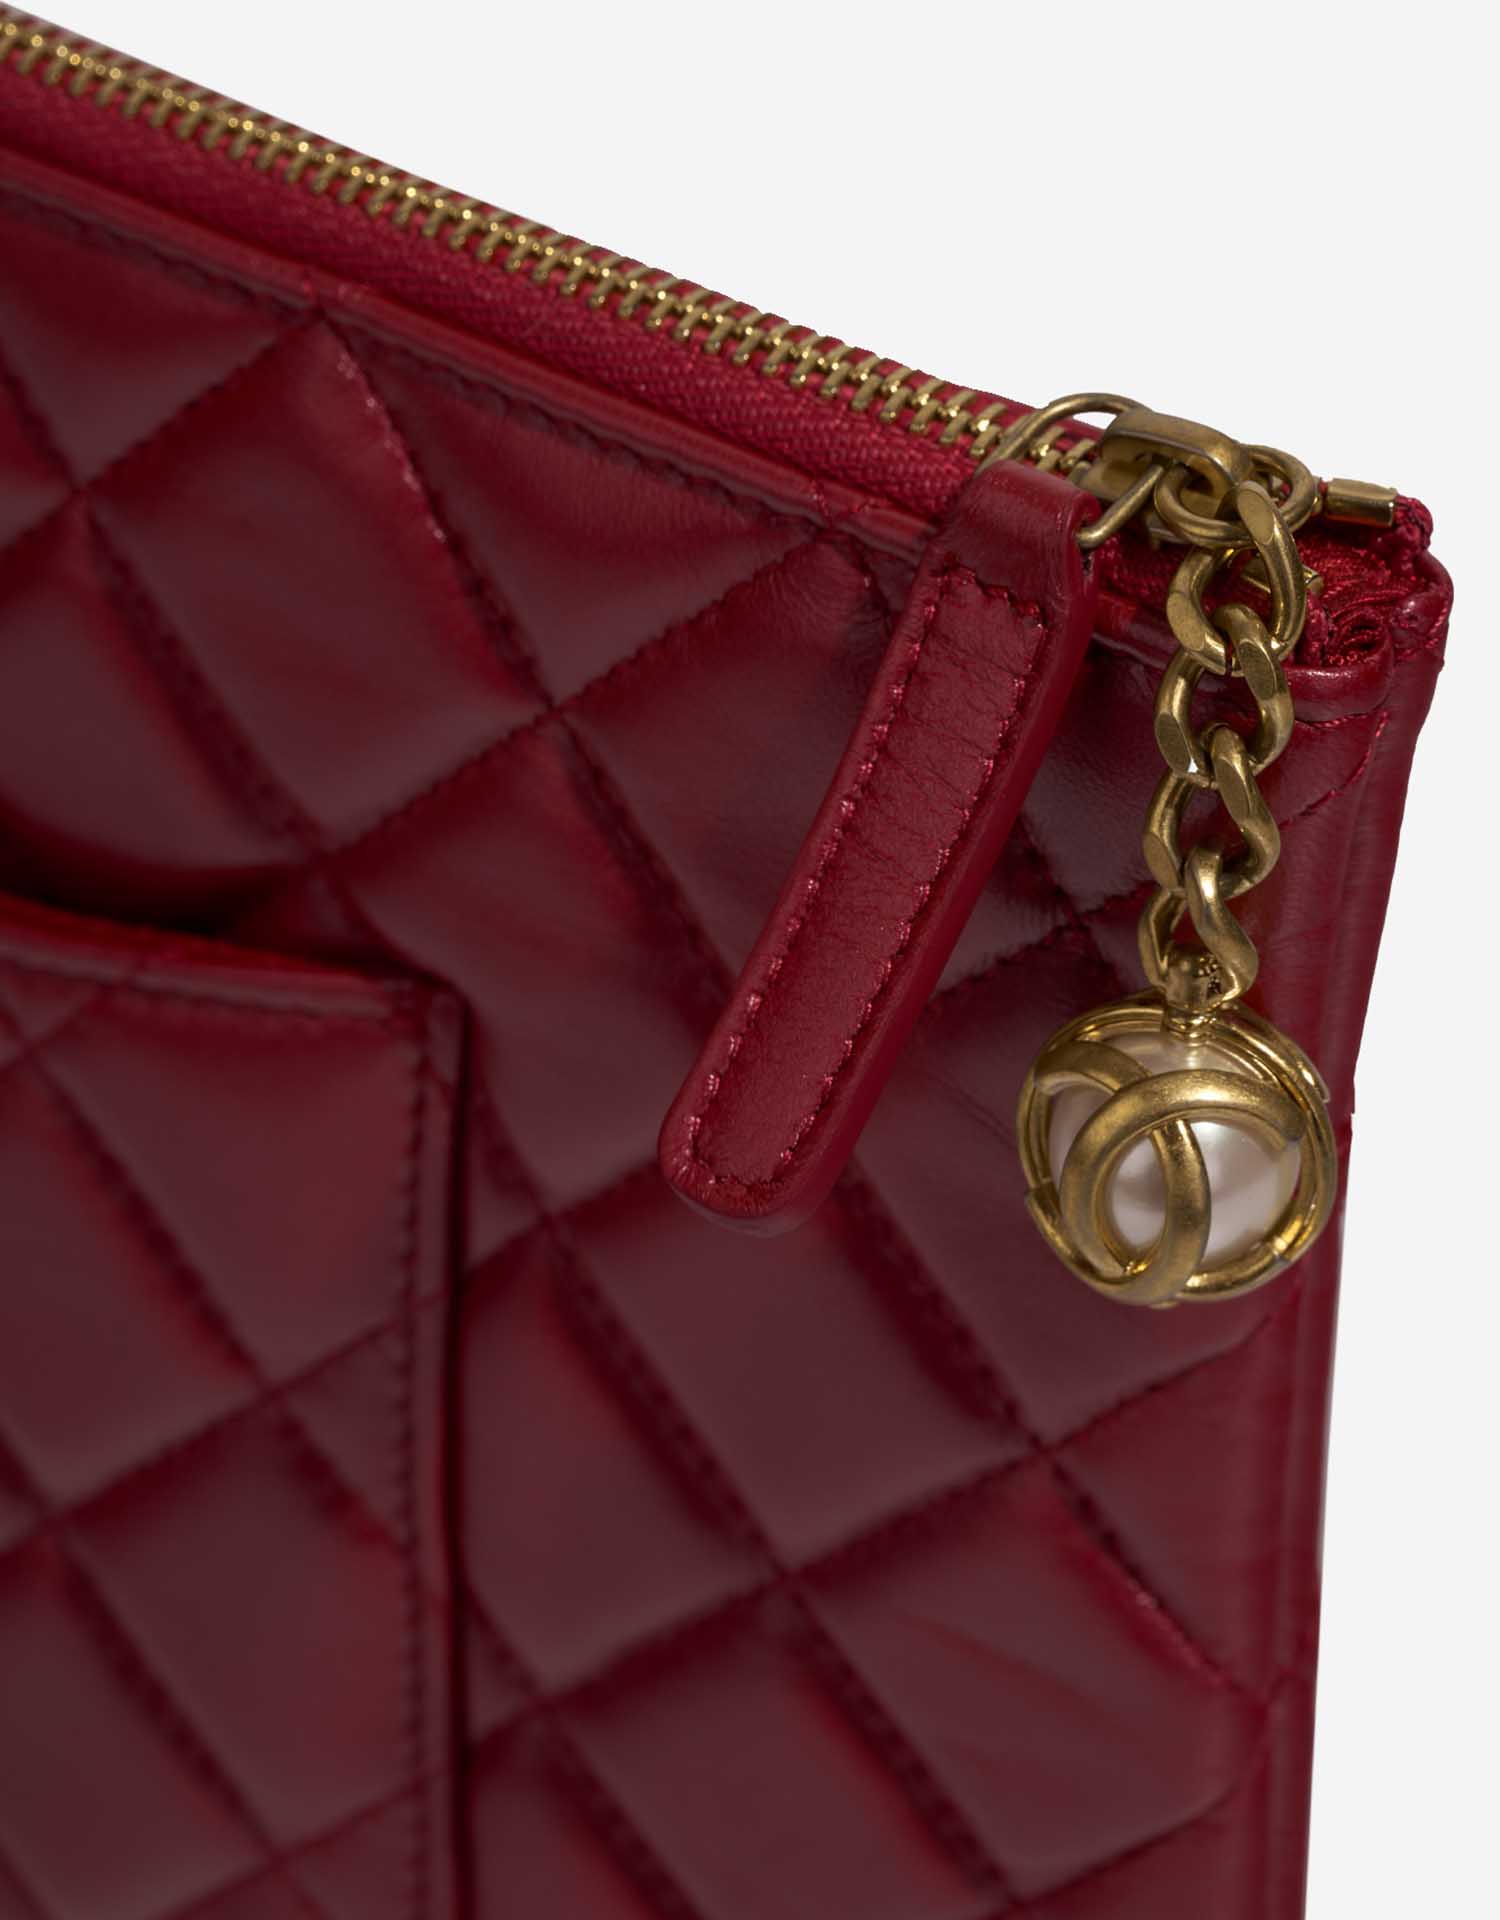 Chanel Timeless Clutch Rot Verschluss-System 1 | Verkaufen Sie Ihre Designer-Tasche auf Saclab.com